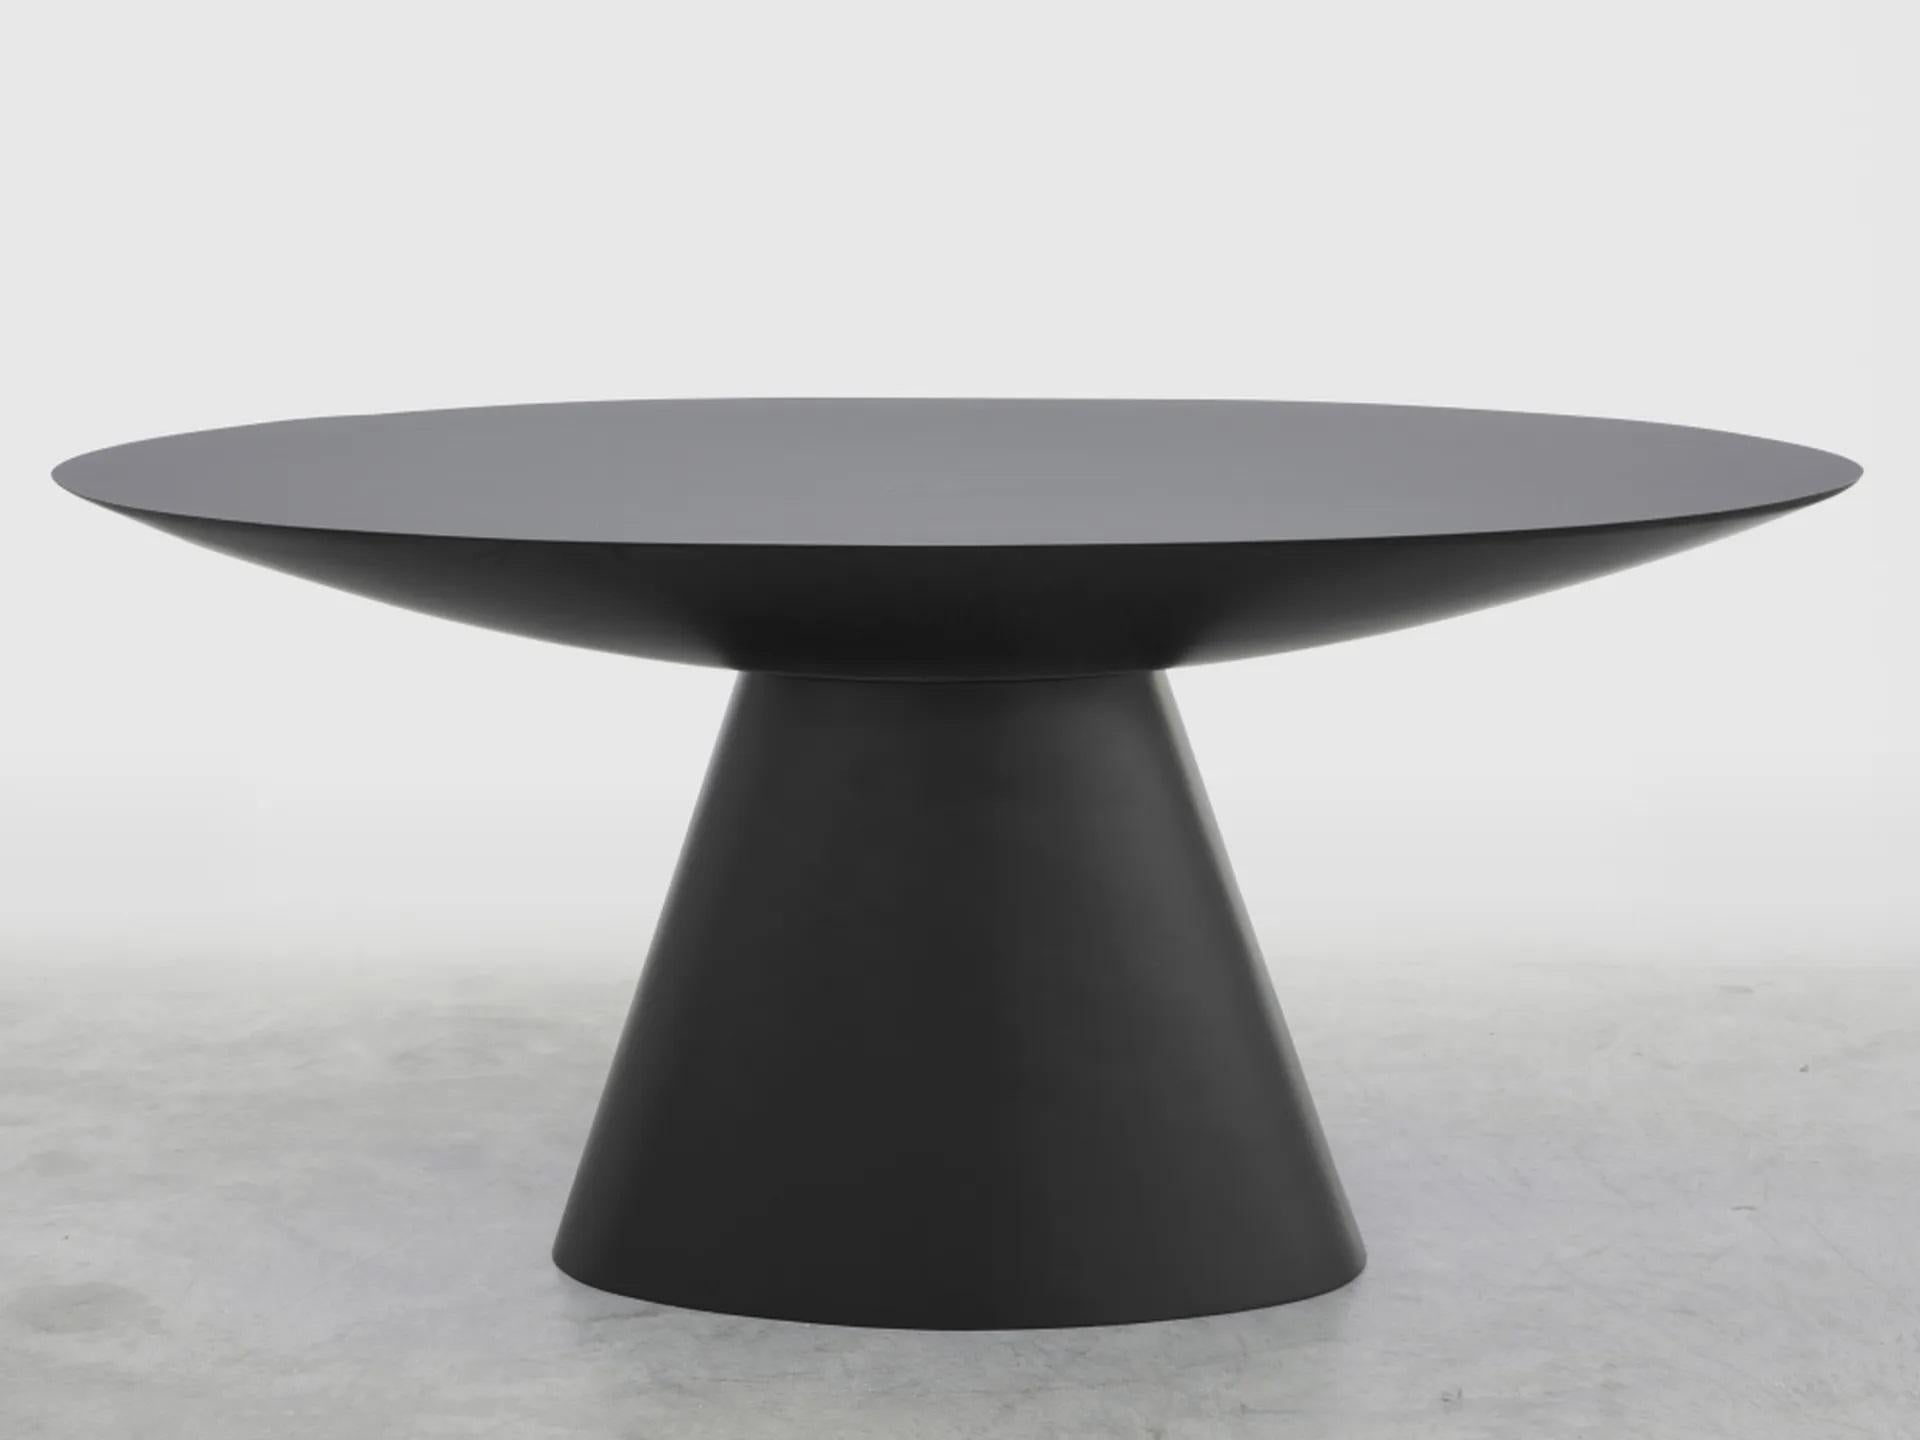 Slab couchtisch by Imperfettolab
2020
Abmessungen: 179 x 99 x H 74
MATERIALIEN: Glasfaser
Erhältlich in Schwarz und Weiß.

Reine Geometrie für diesen Tisch, der eine ovale Platte aufweist. Eine geräumige Ellipse, die sich von einem zentralen Sockel